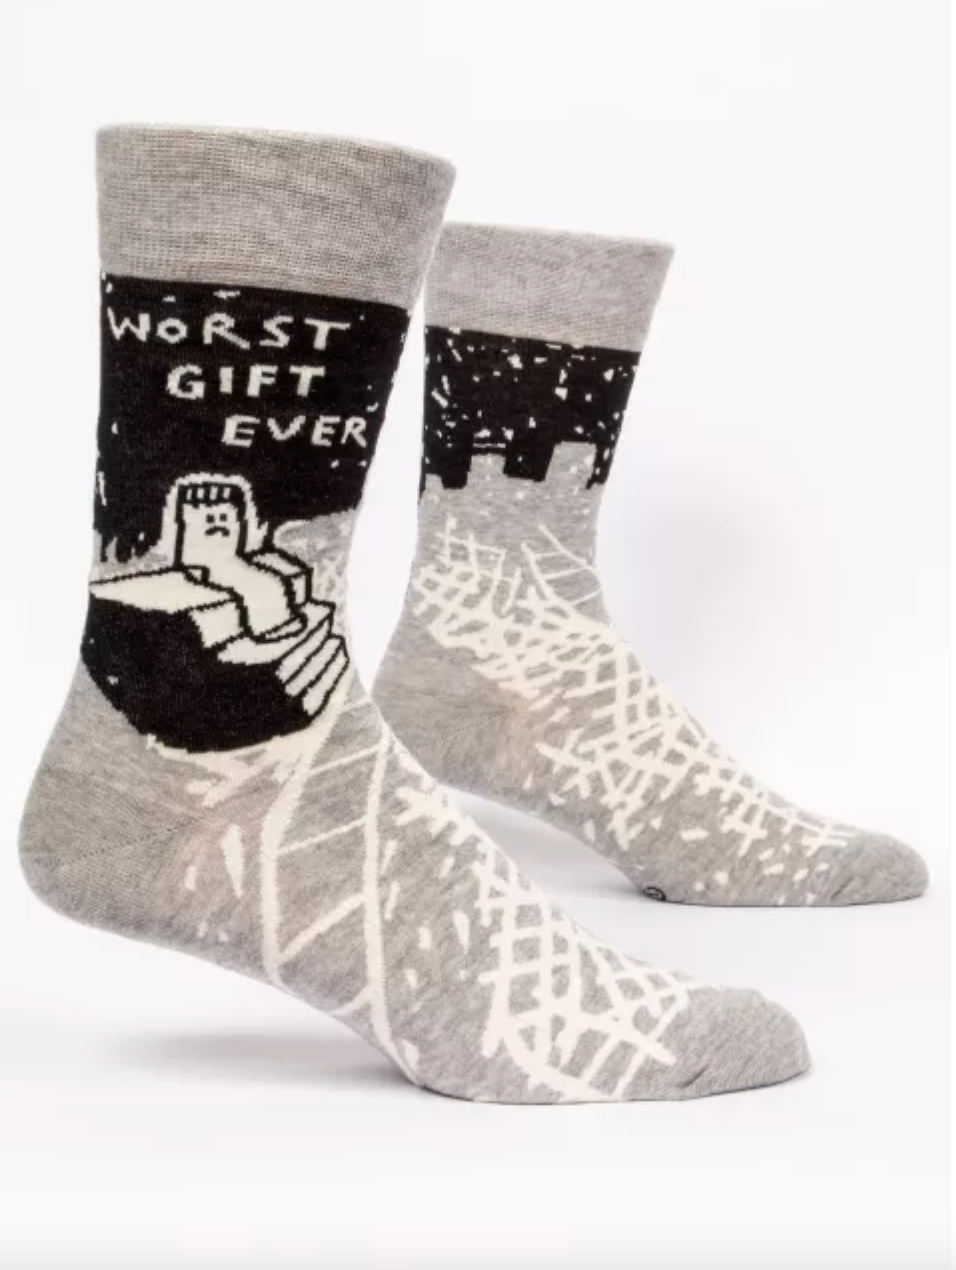 Men's Socks: Worst Gift Ever